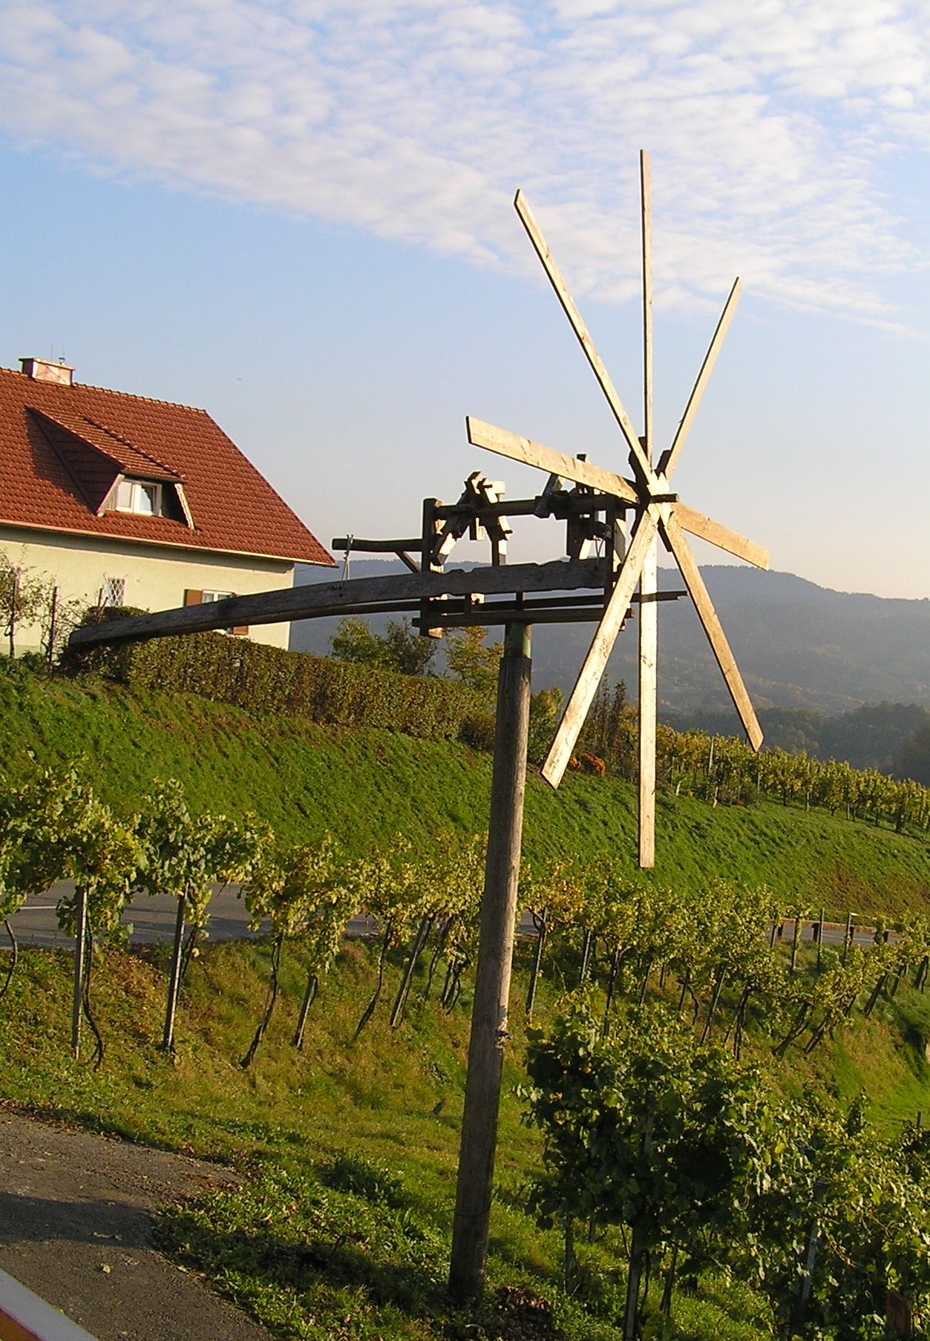 Klappenwindrad zum Fernhalten der Vögel von den Weingärten (Südsteiermark, Österreich) 
Quelle: A. Satra